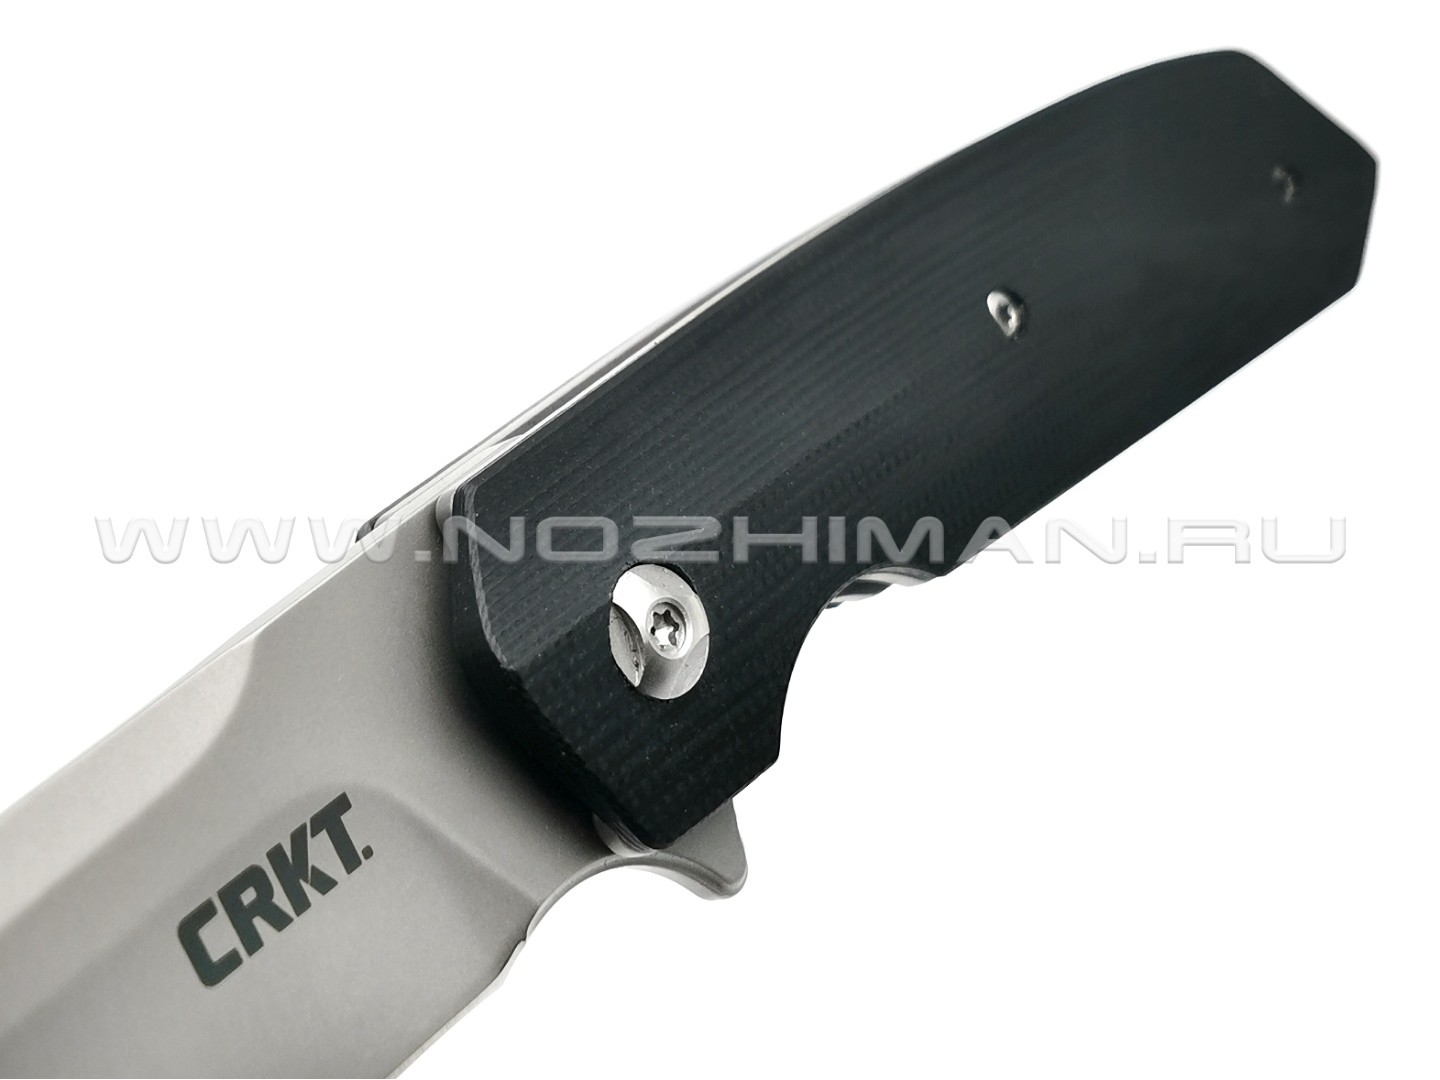 Нож CRKT Maven 6920 сталь 8Cr13MoV рукоять G10 black